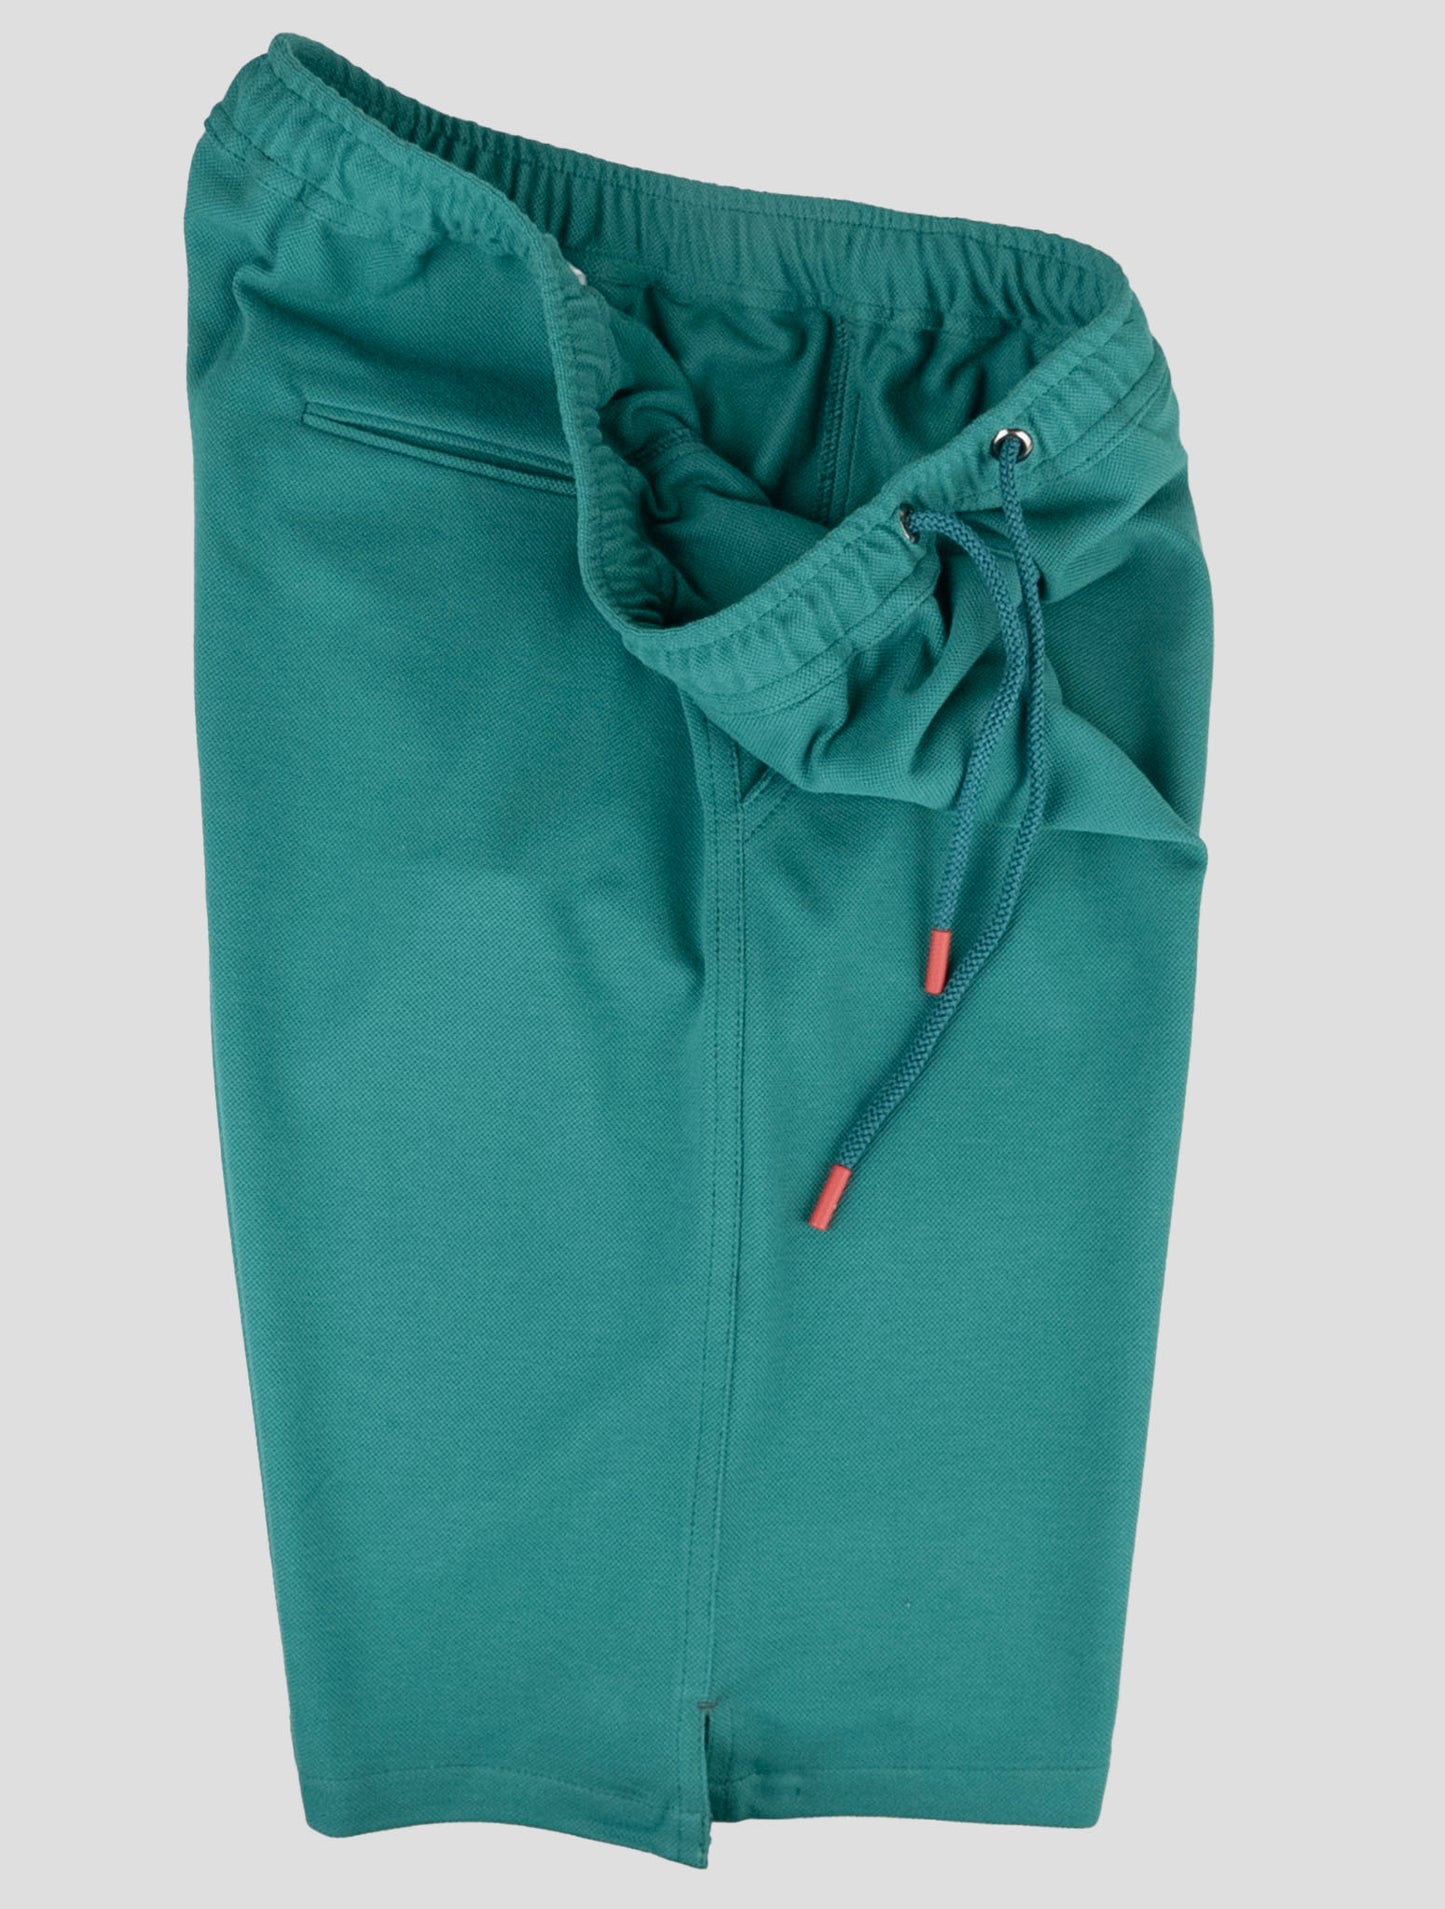 Traje a juego Kiton-Azul Mariano y verde pantalones cortos chándal